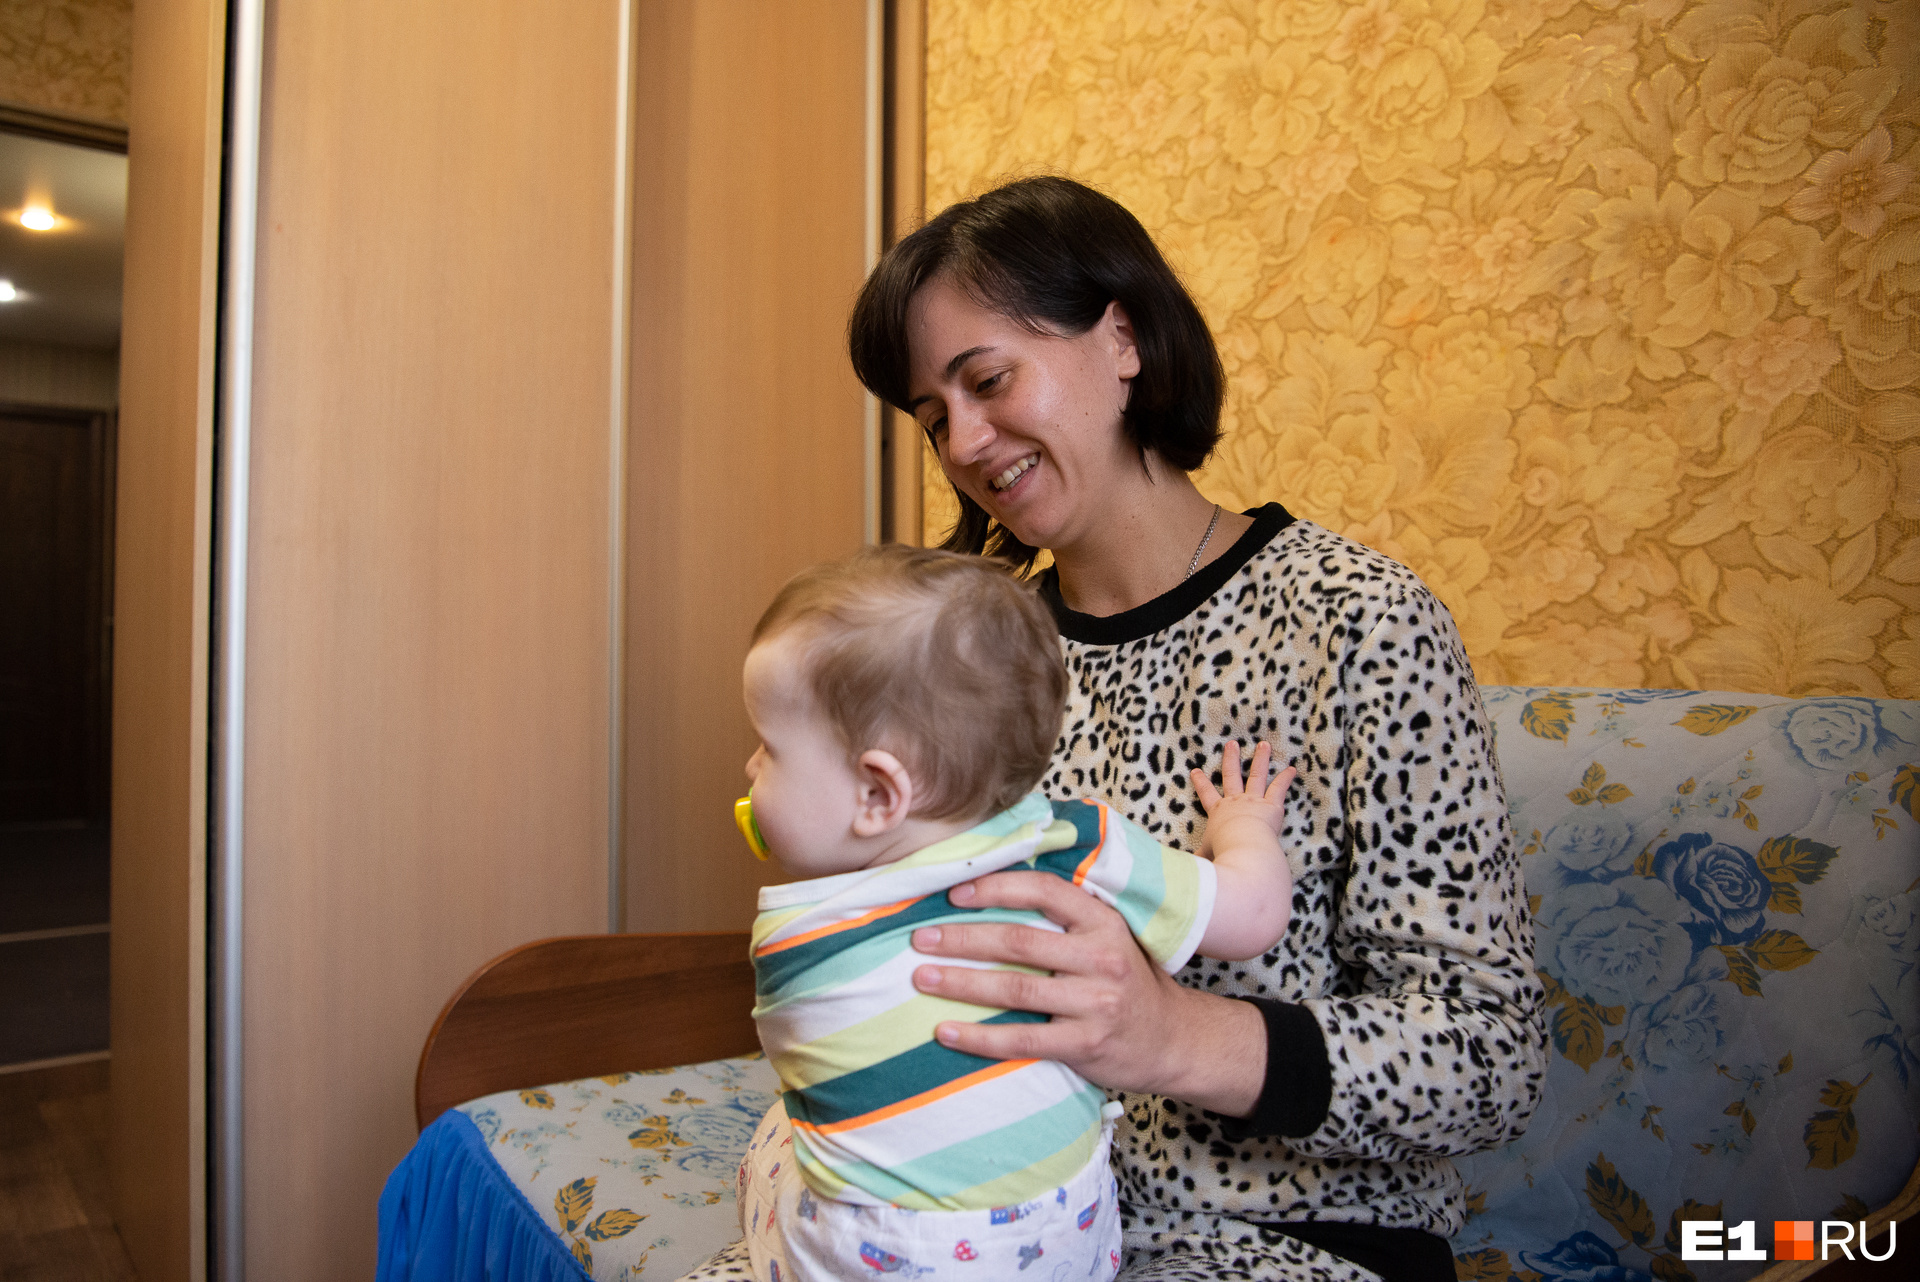 Василиса слышала о том, что существуют кризисные центры для женщин, но не думала когда-нибудь оказаться в одном из них 